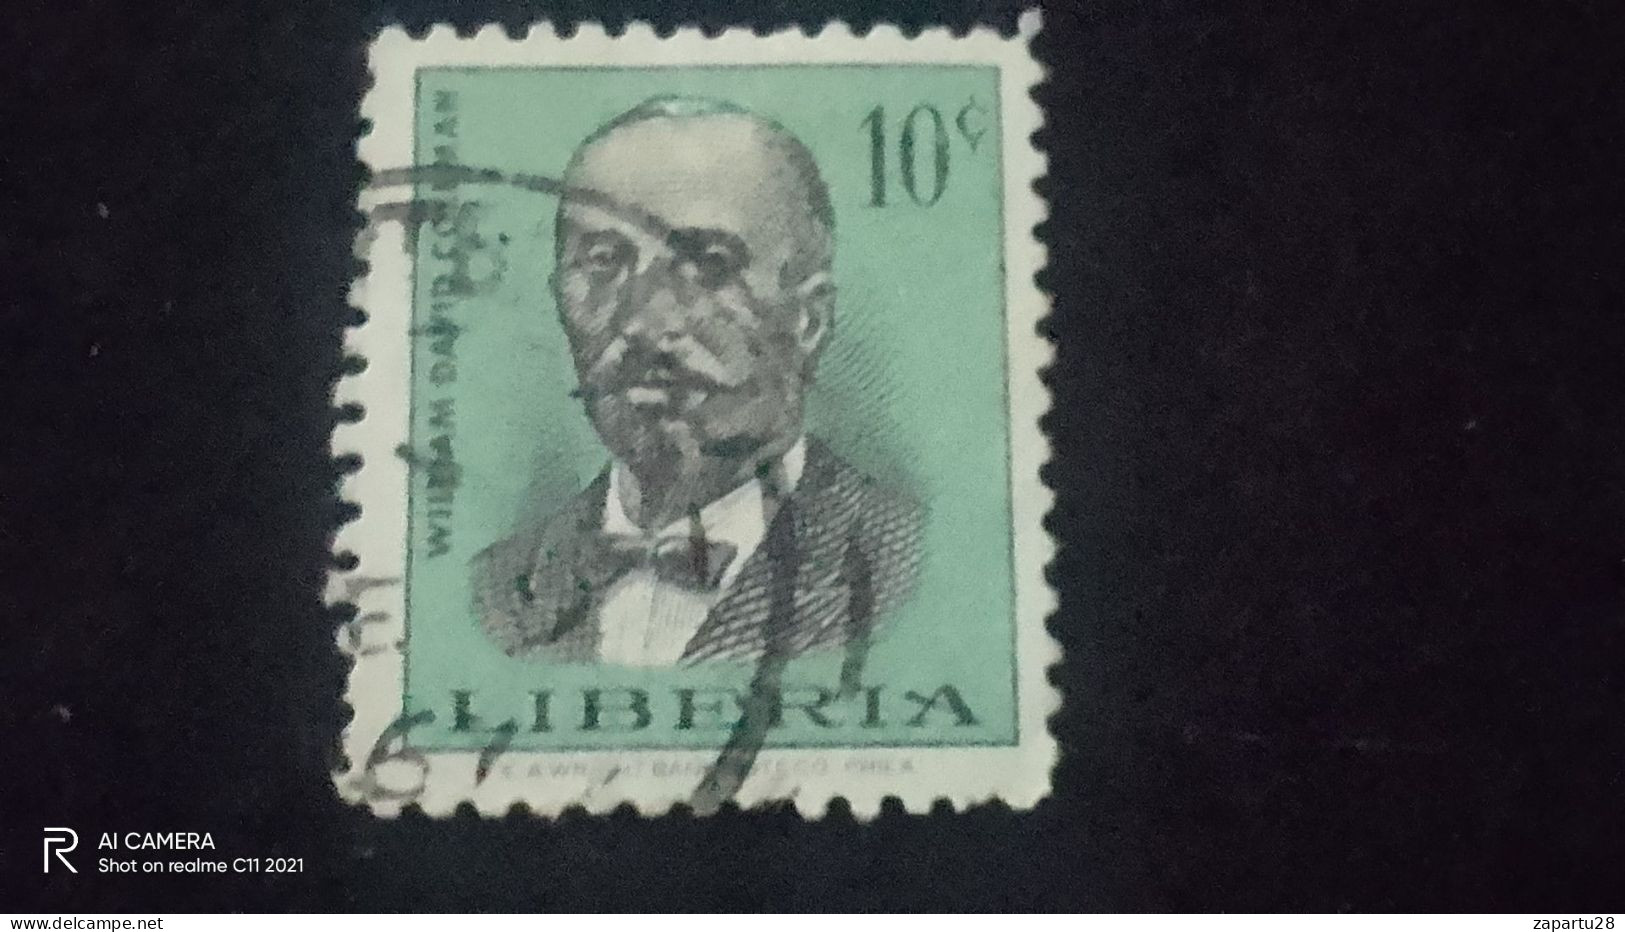 LİBERİA-          10    CENT               USED - Liberia